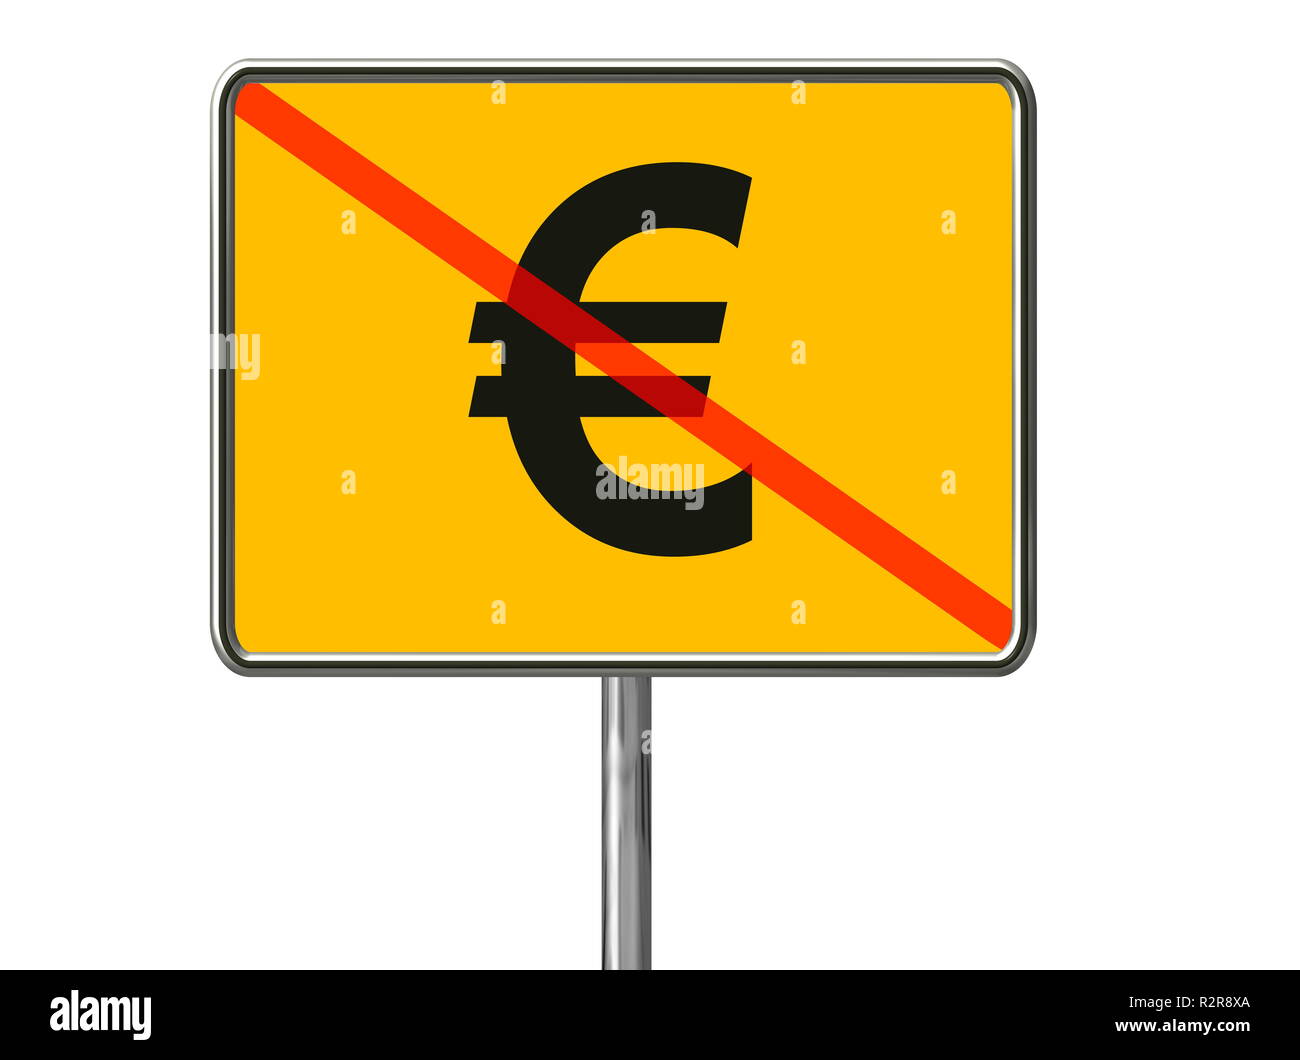 euro sign strikeout Stock Photo